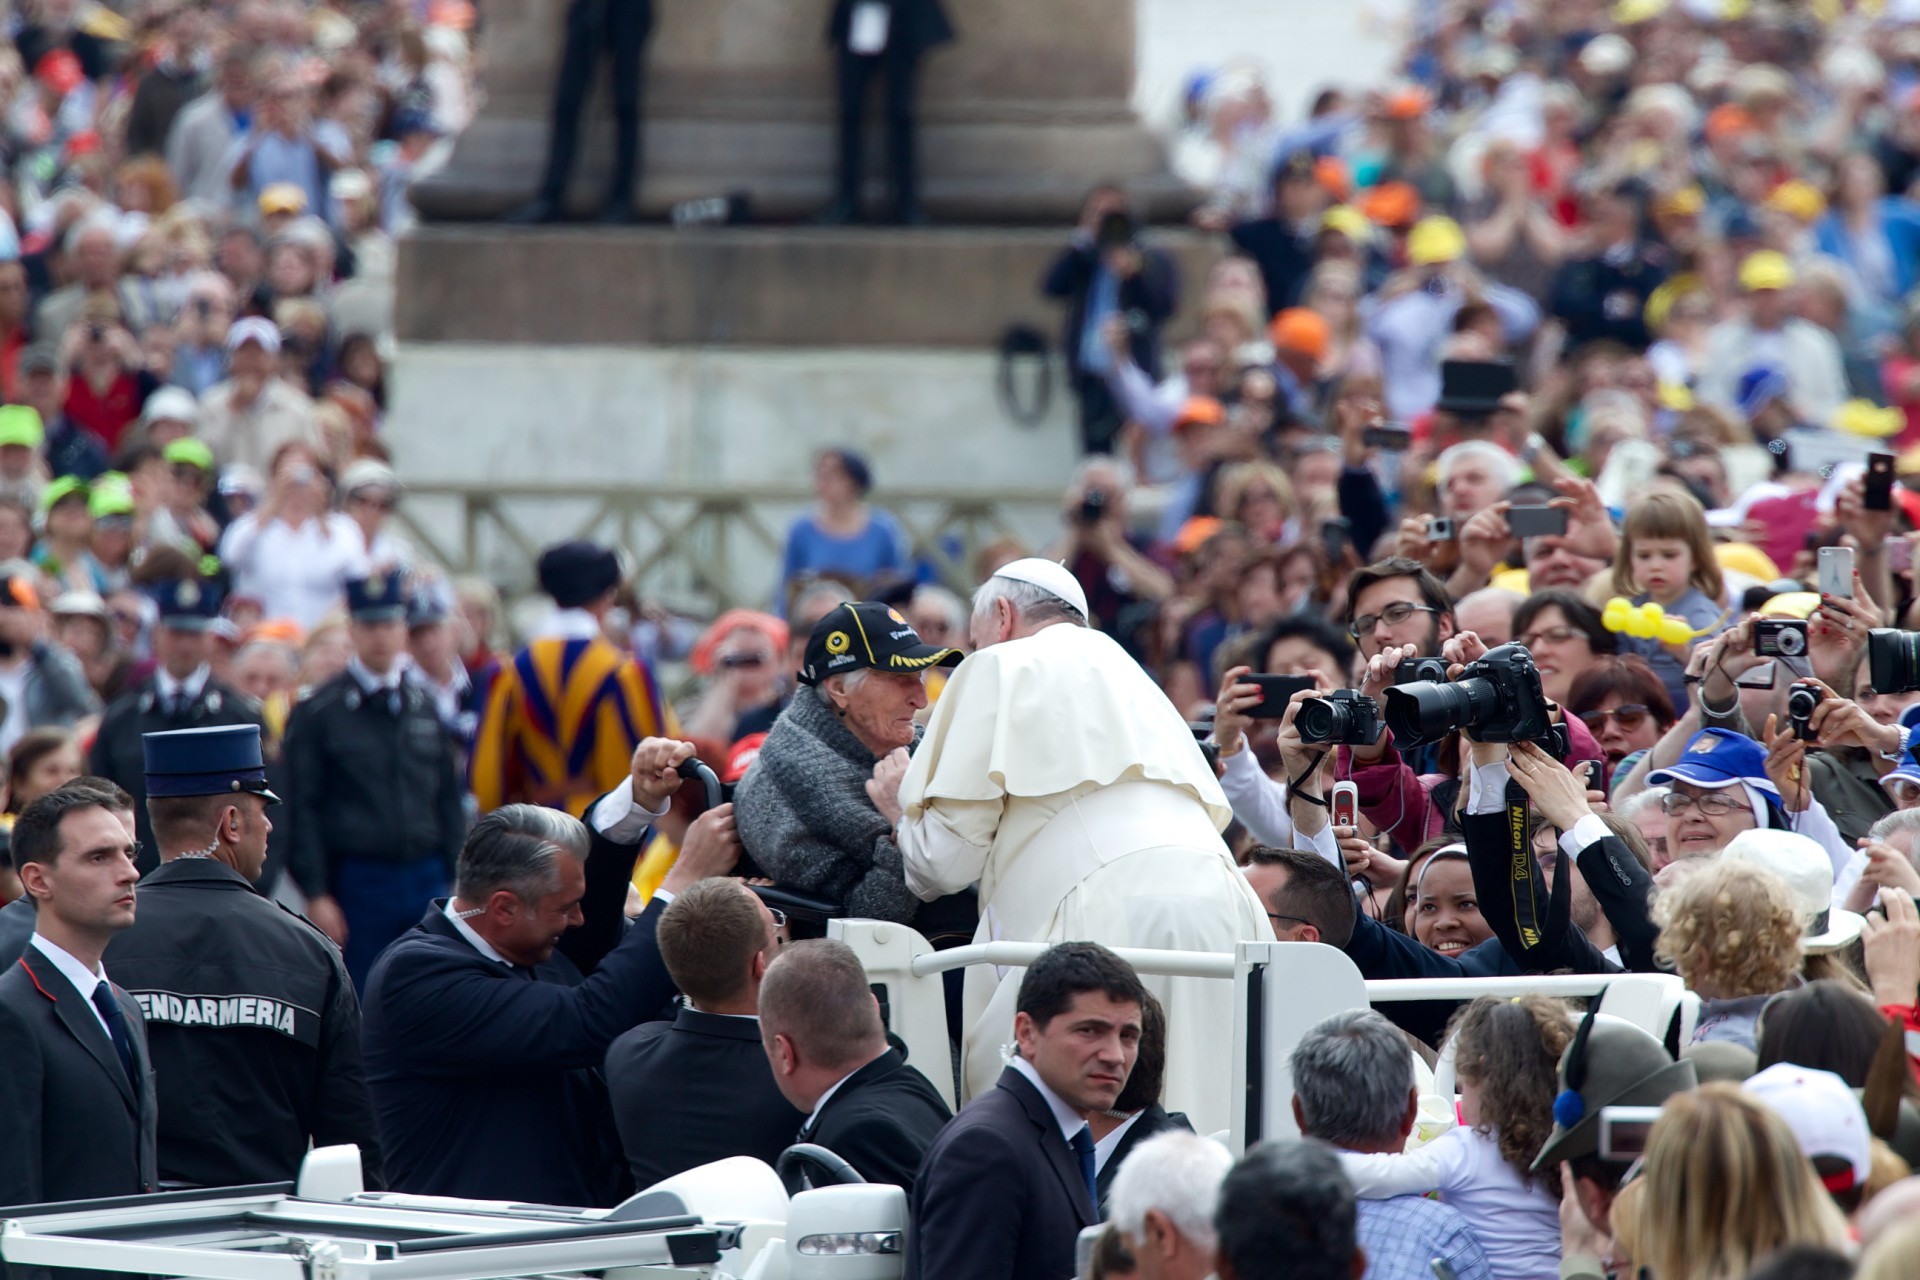 Papst Franziskus begegnet einer Frau im Rollstuhl